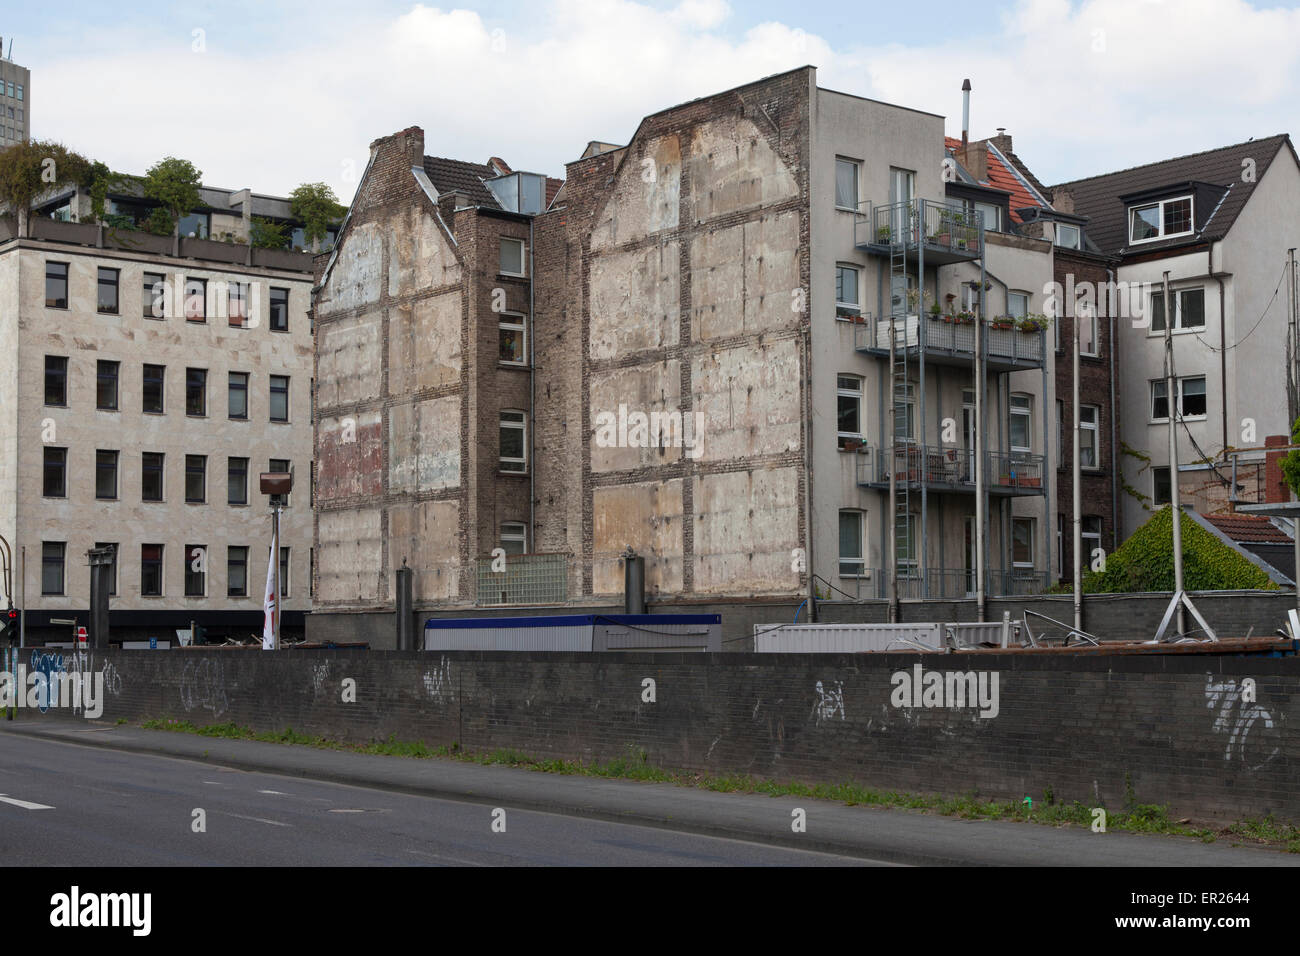 Europa, Deutschland, Nordrhein-Westfalen, Koeln, Giebelwand eines Hauses am Thuermchenswall Ecke Turiner Strasse, Umrisse eines  Stock Photo